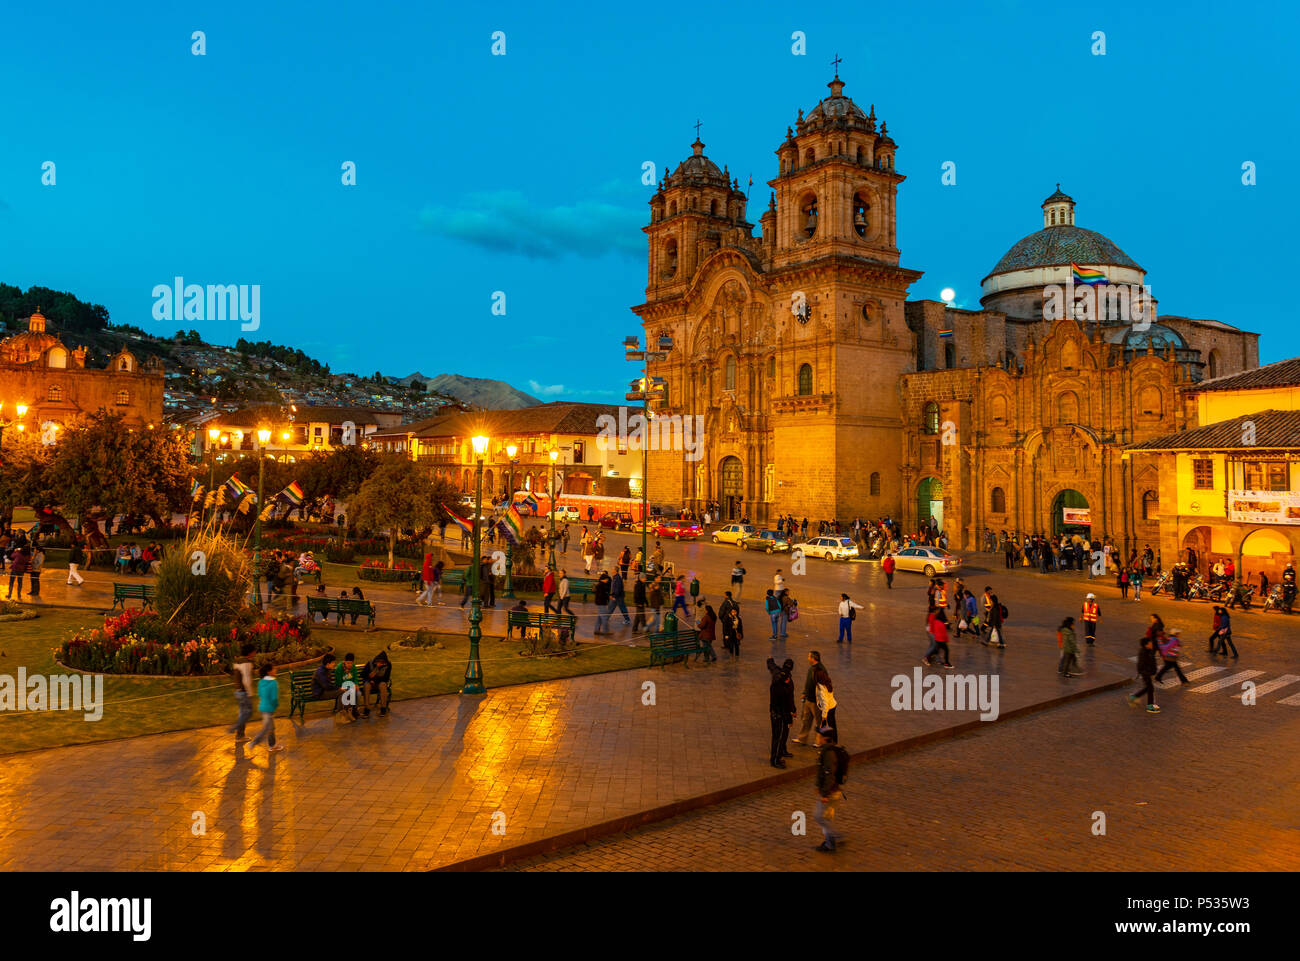 Großer Reichtum an der Plaza de Armas, den Hauptplatz von Cusco mit ihrer Kathedrale nach Sonnenuntergang während der blauen Stunde und Unschärfe Bewegung von Menschen, Peru. Stockfoto